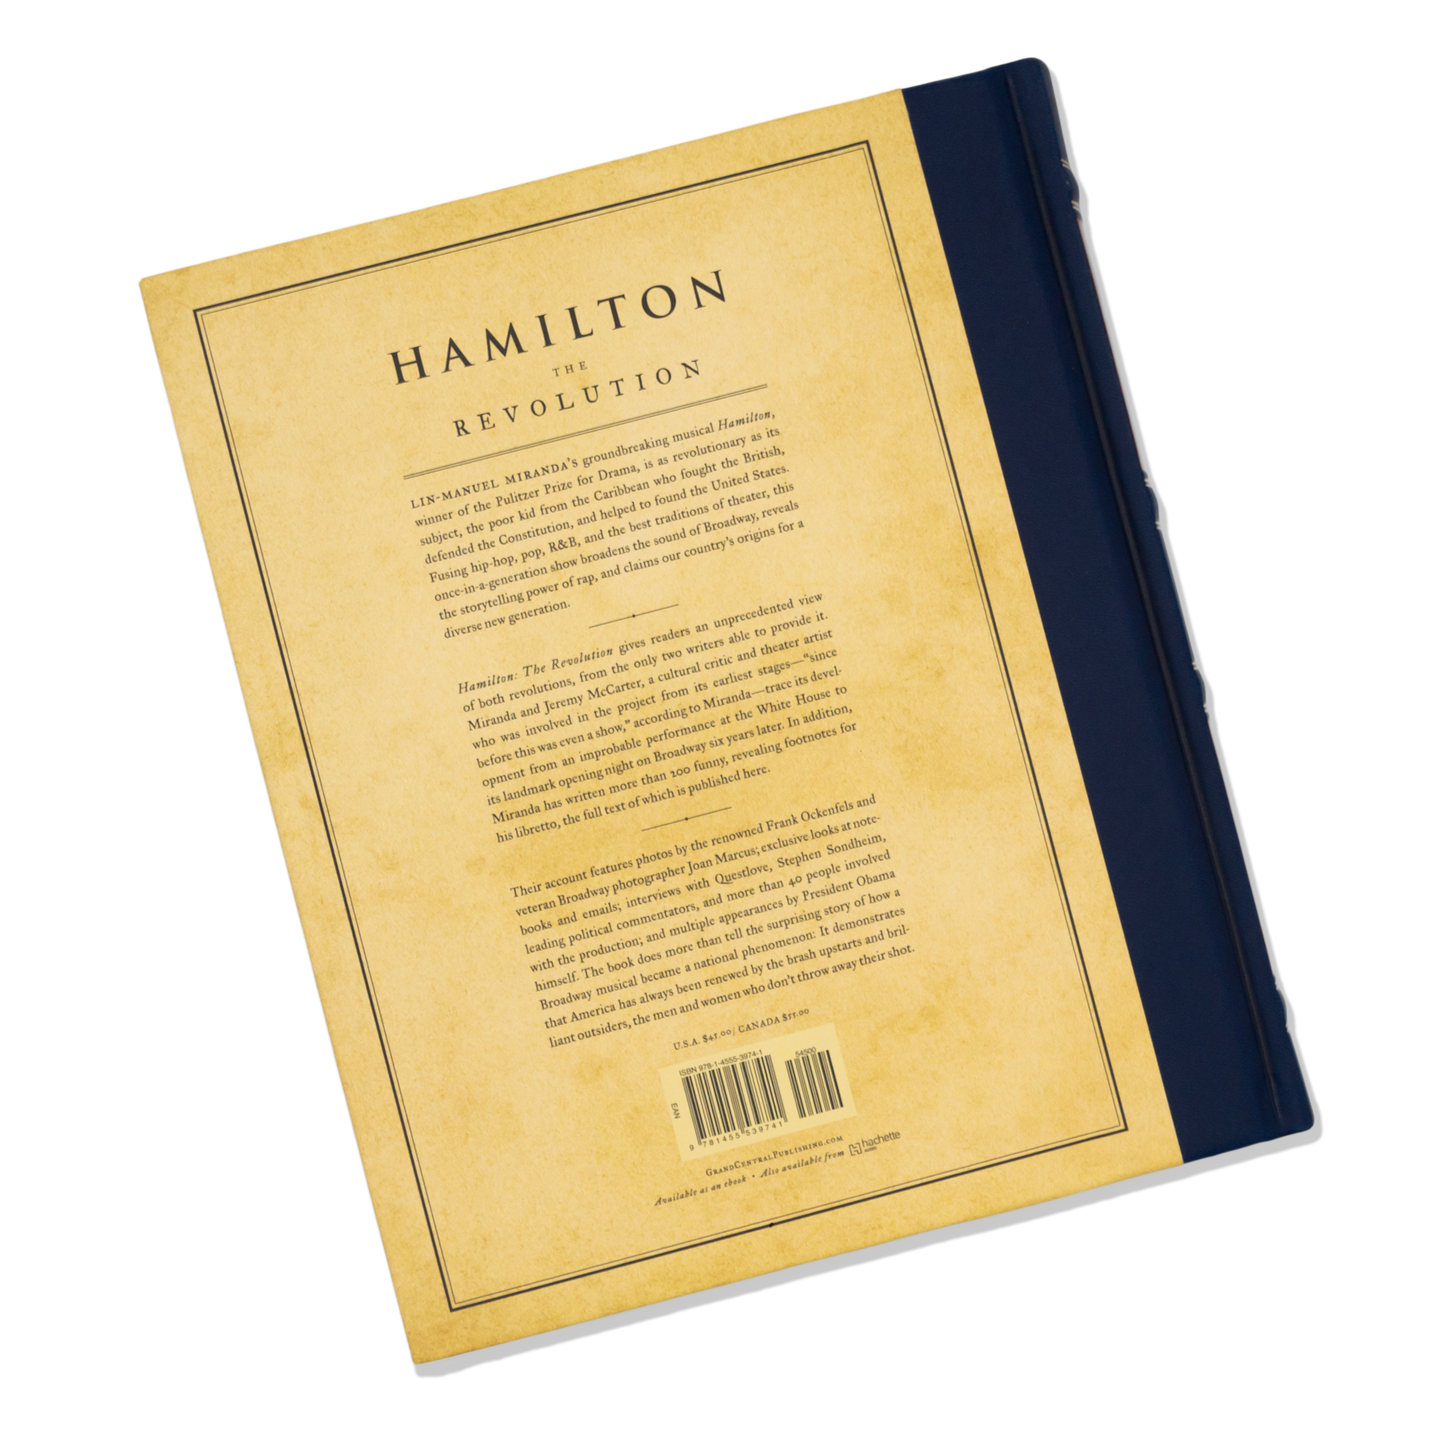 HAMILTON The Revolution Hardcover Book